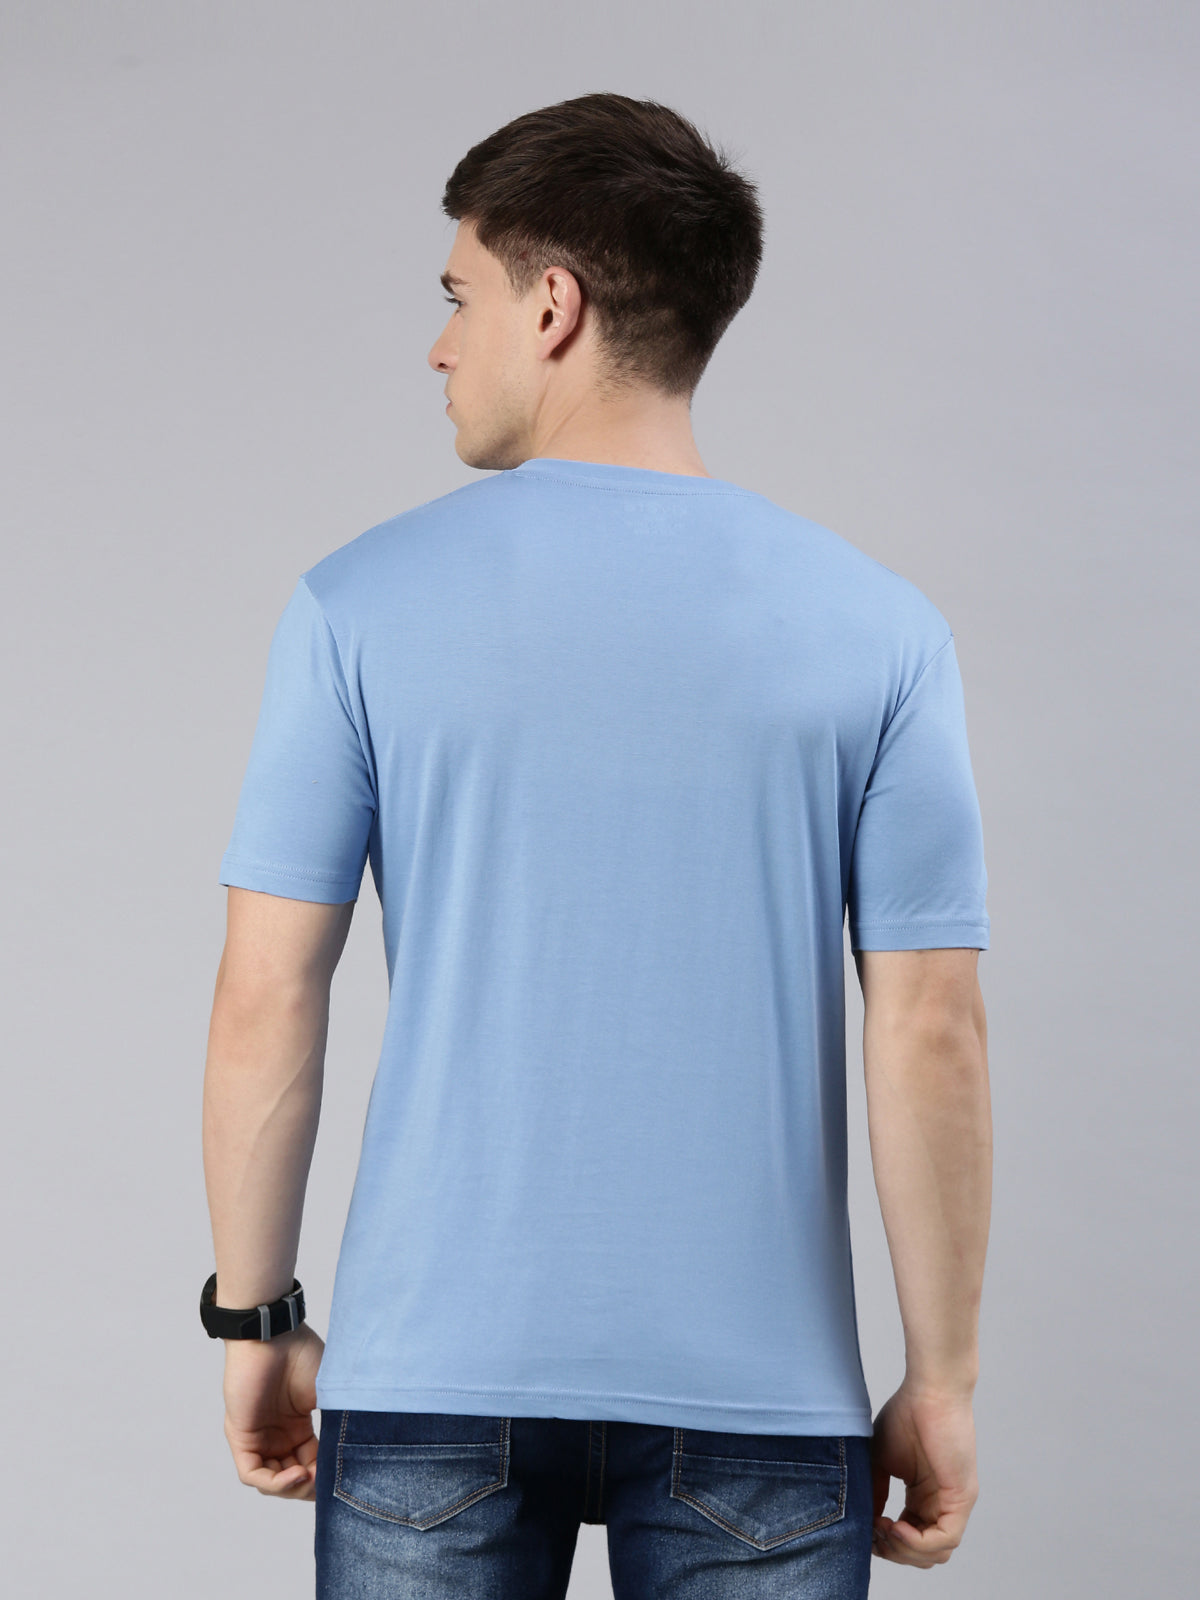 Men's T Shirt Online – KIVOFA